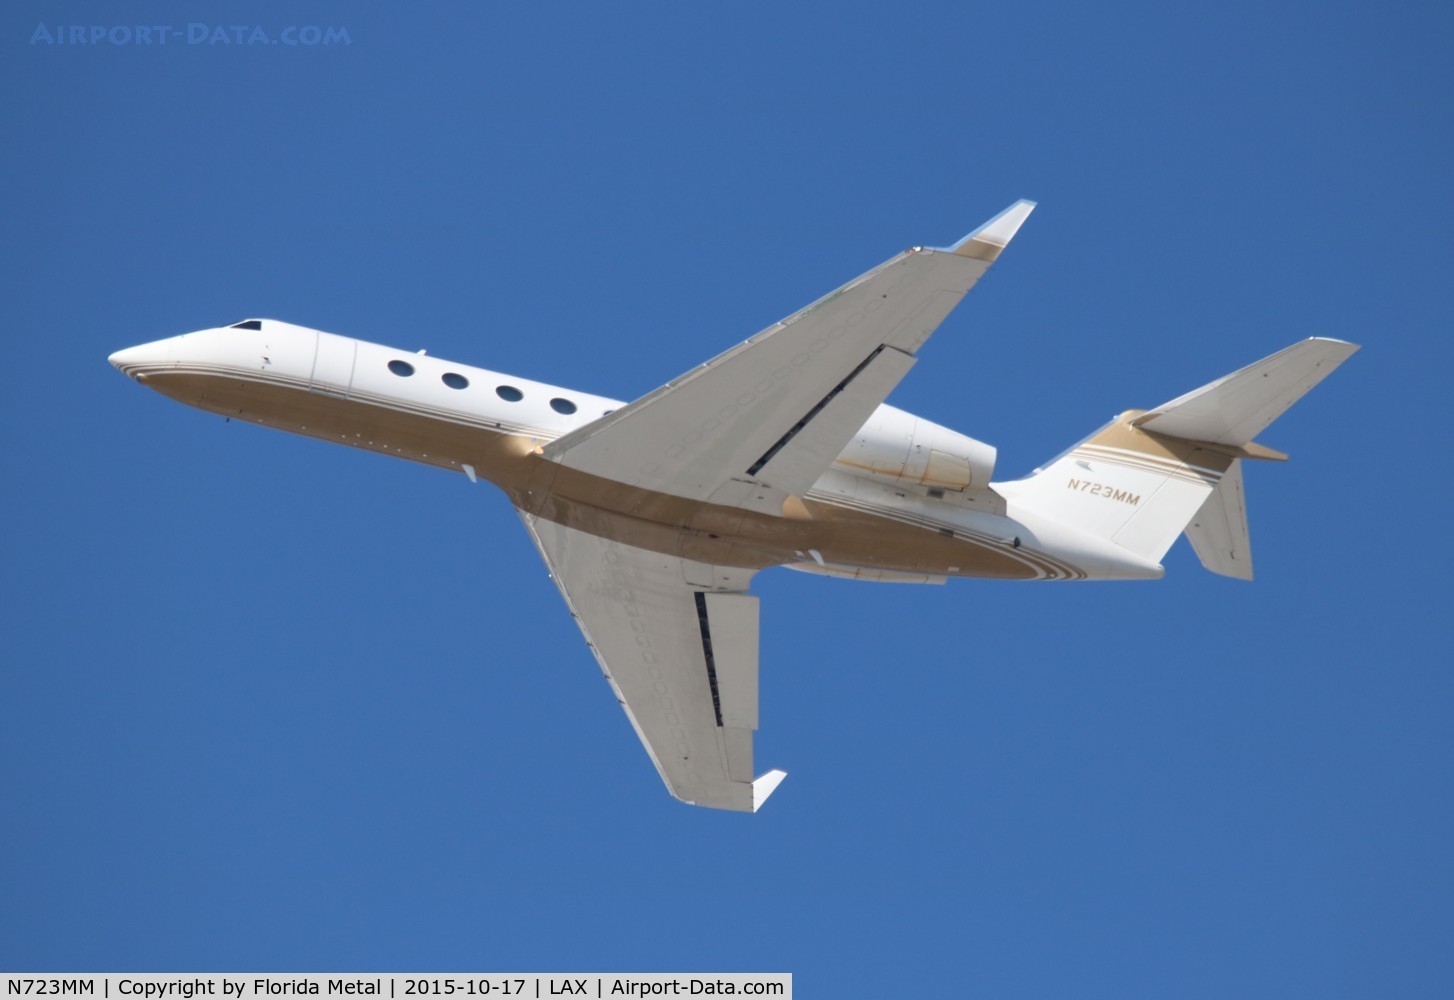 N723MM, 2007 Gulfstream Aerospace GIV-X (G350) C/N 4077, Gulfstream G350